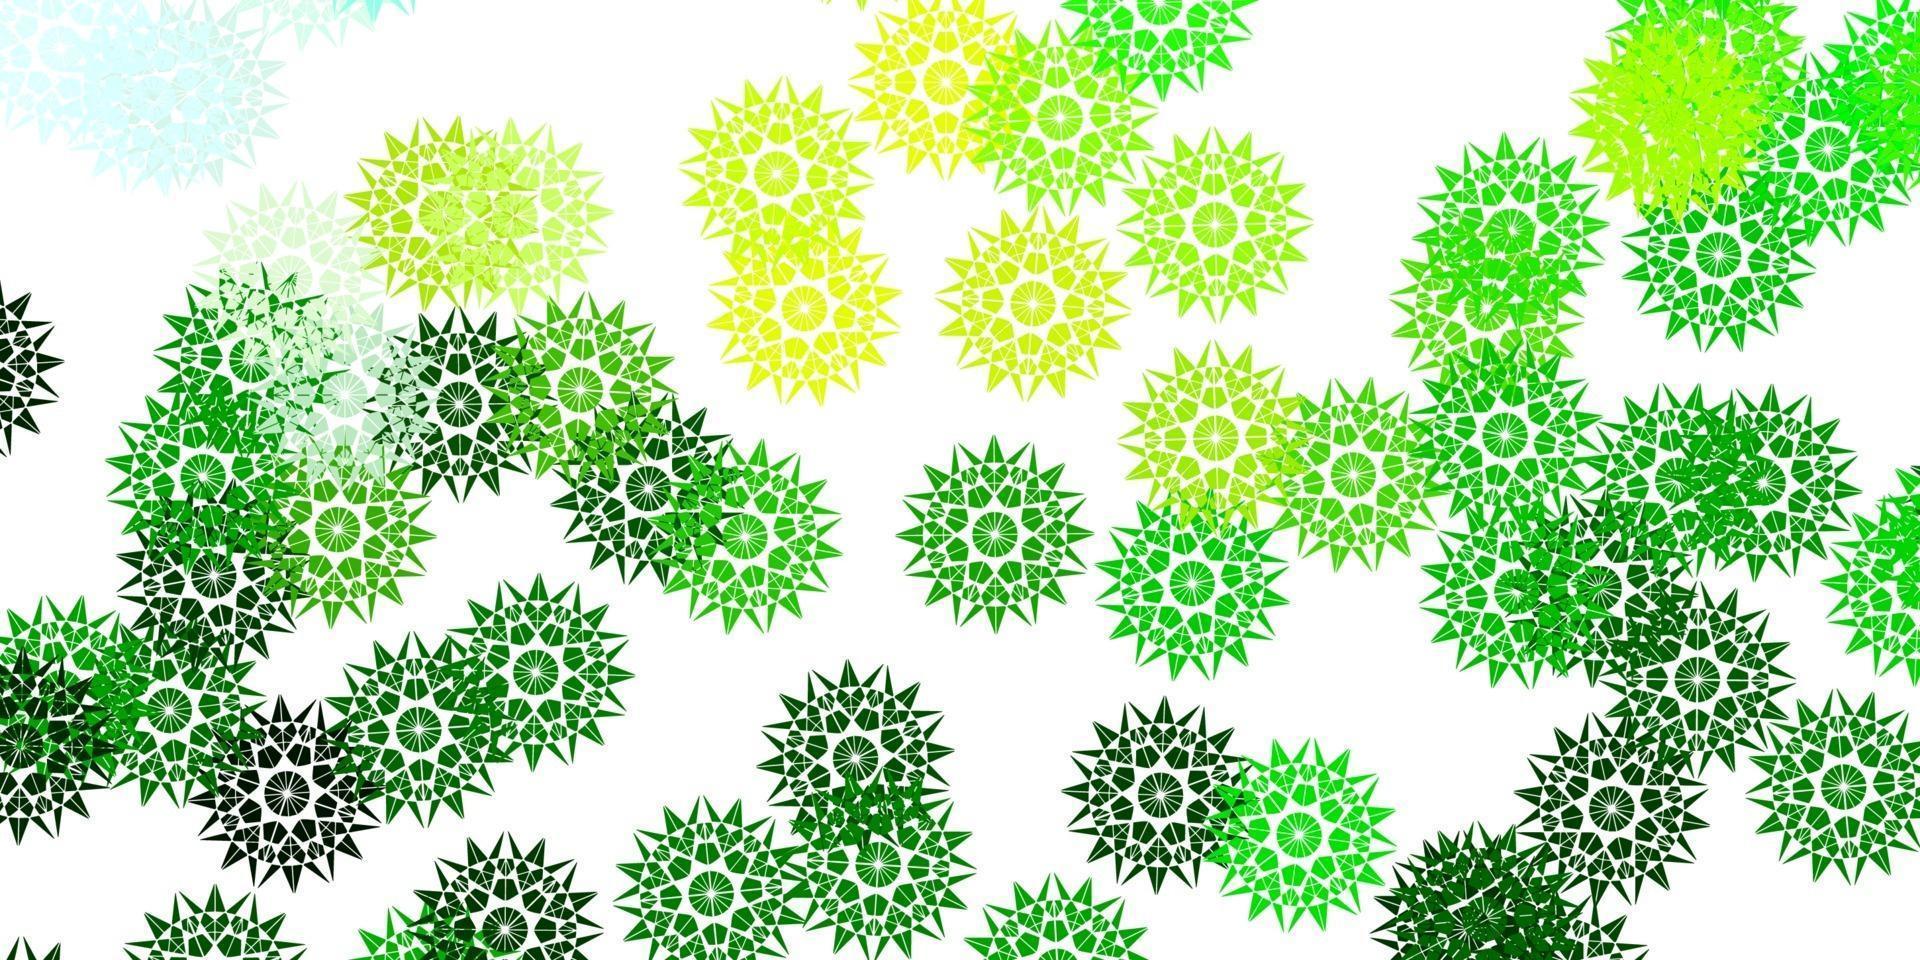 trama di doodle vettoriale verde chiaro, giallo con fiori.